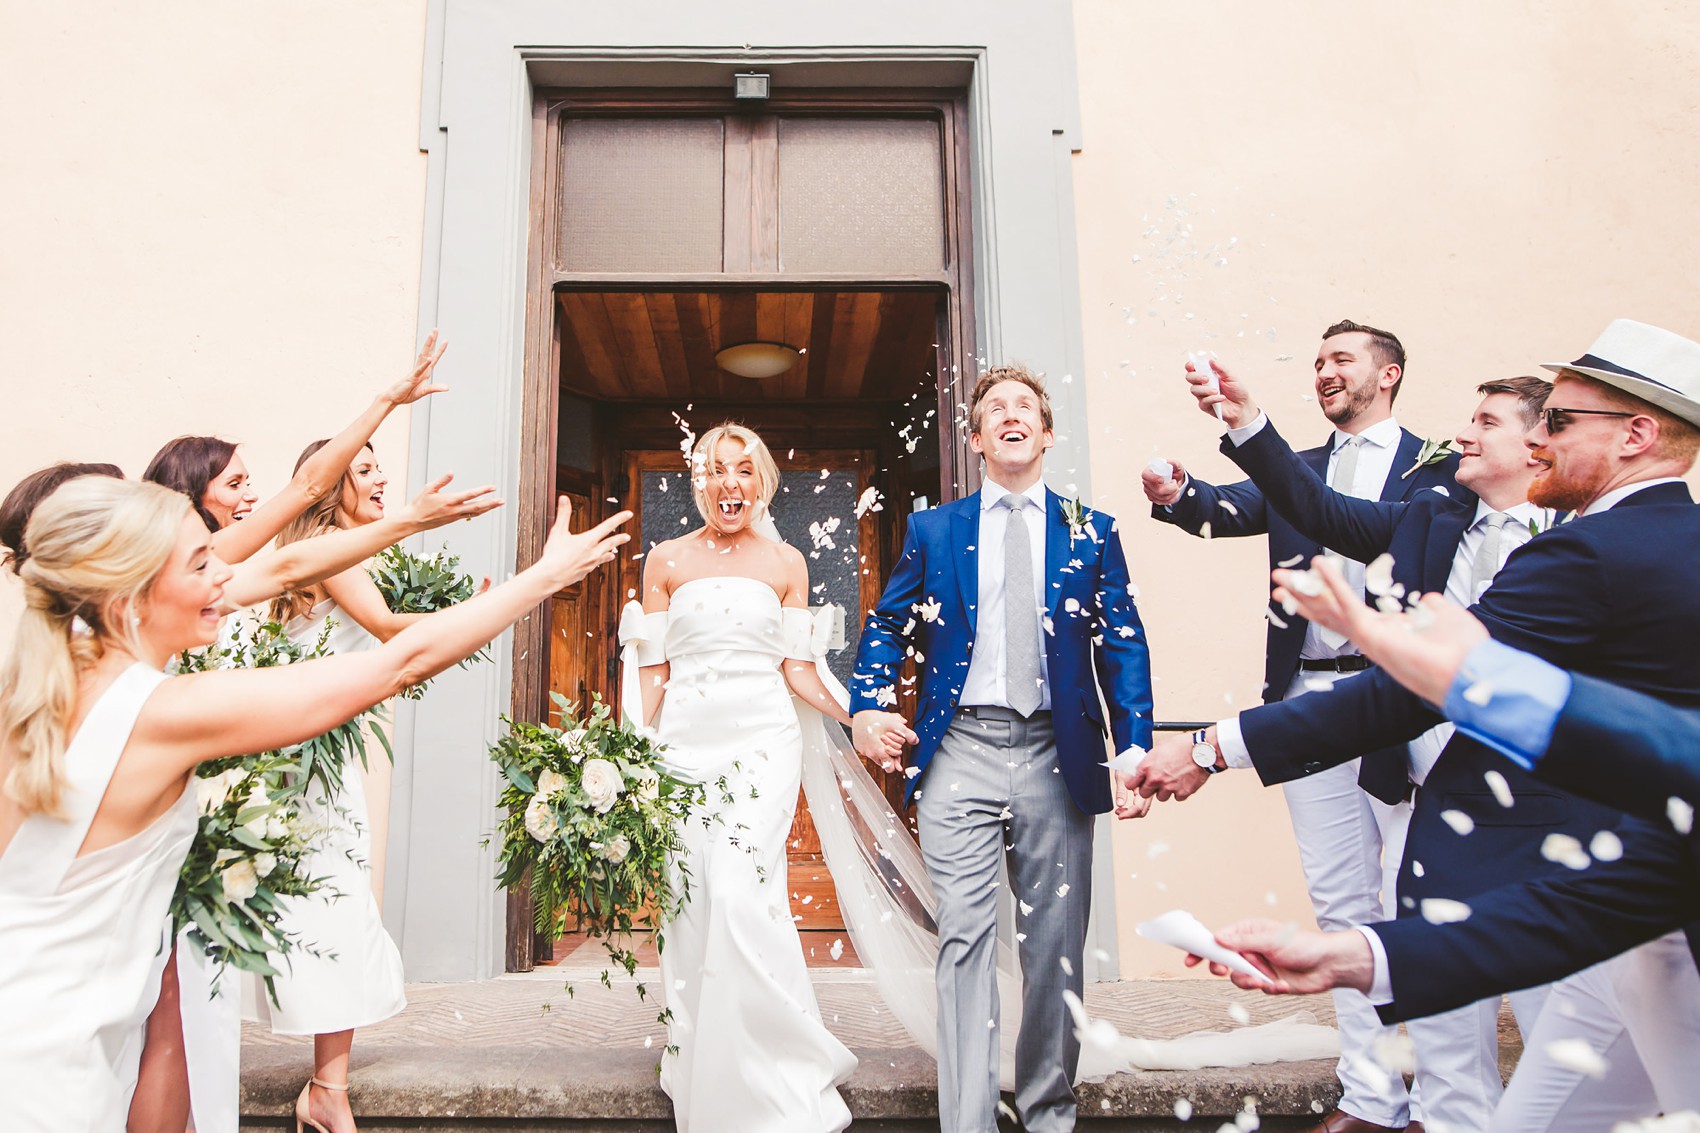 Sachin and Babi rustic wedding in Italy 24